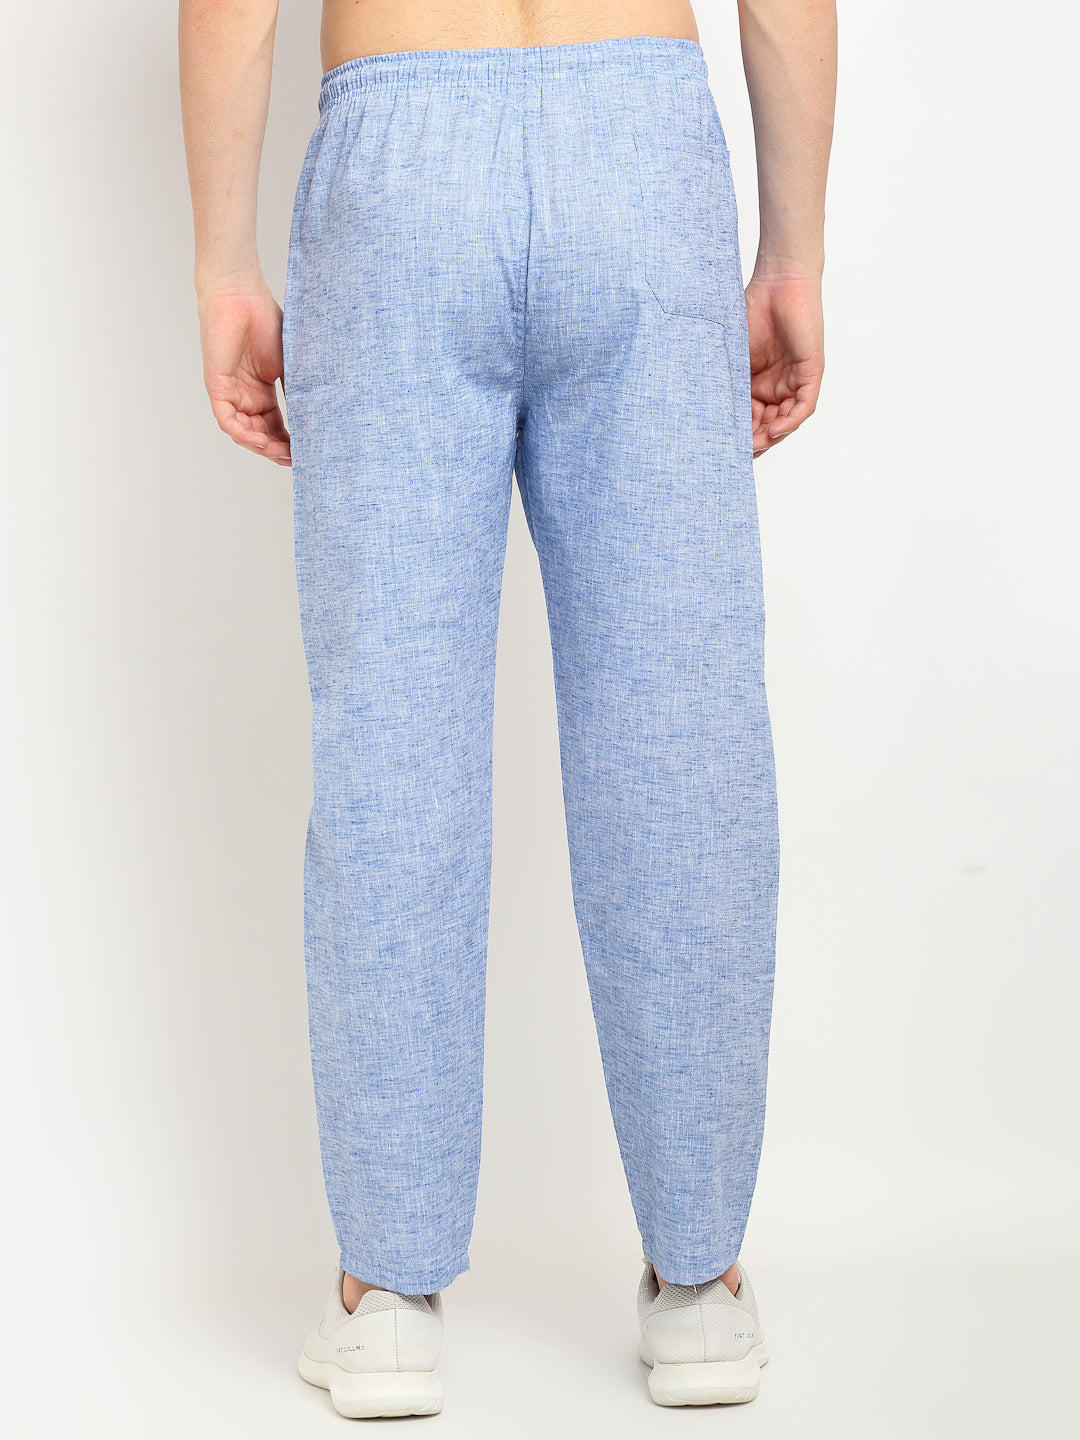 Jainish Men's Blue Linen Cotton Track Pants ( JOG 021Blue ) - Distacart